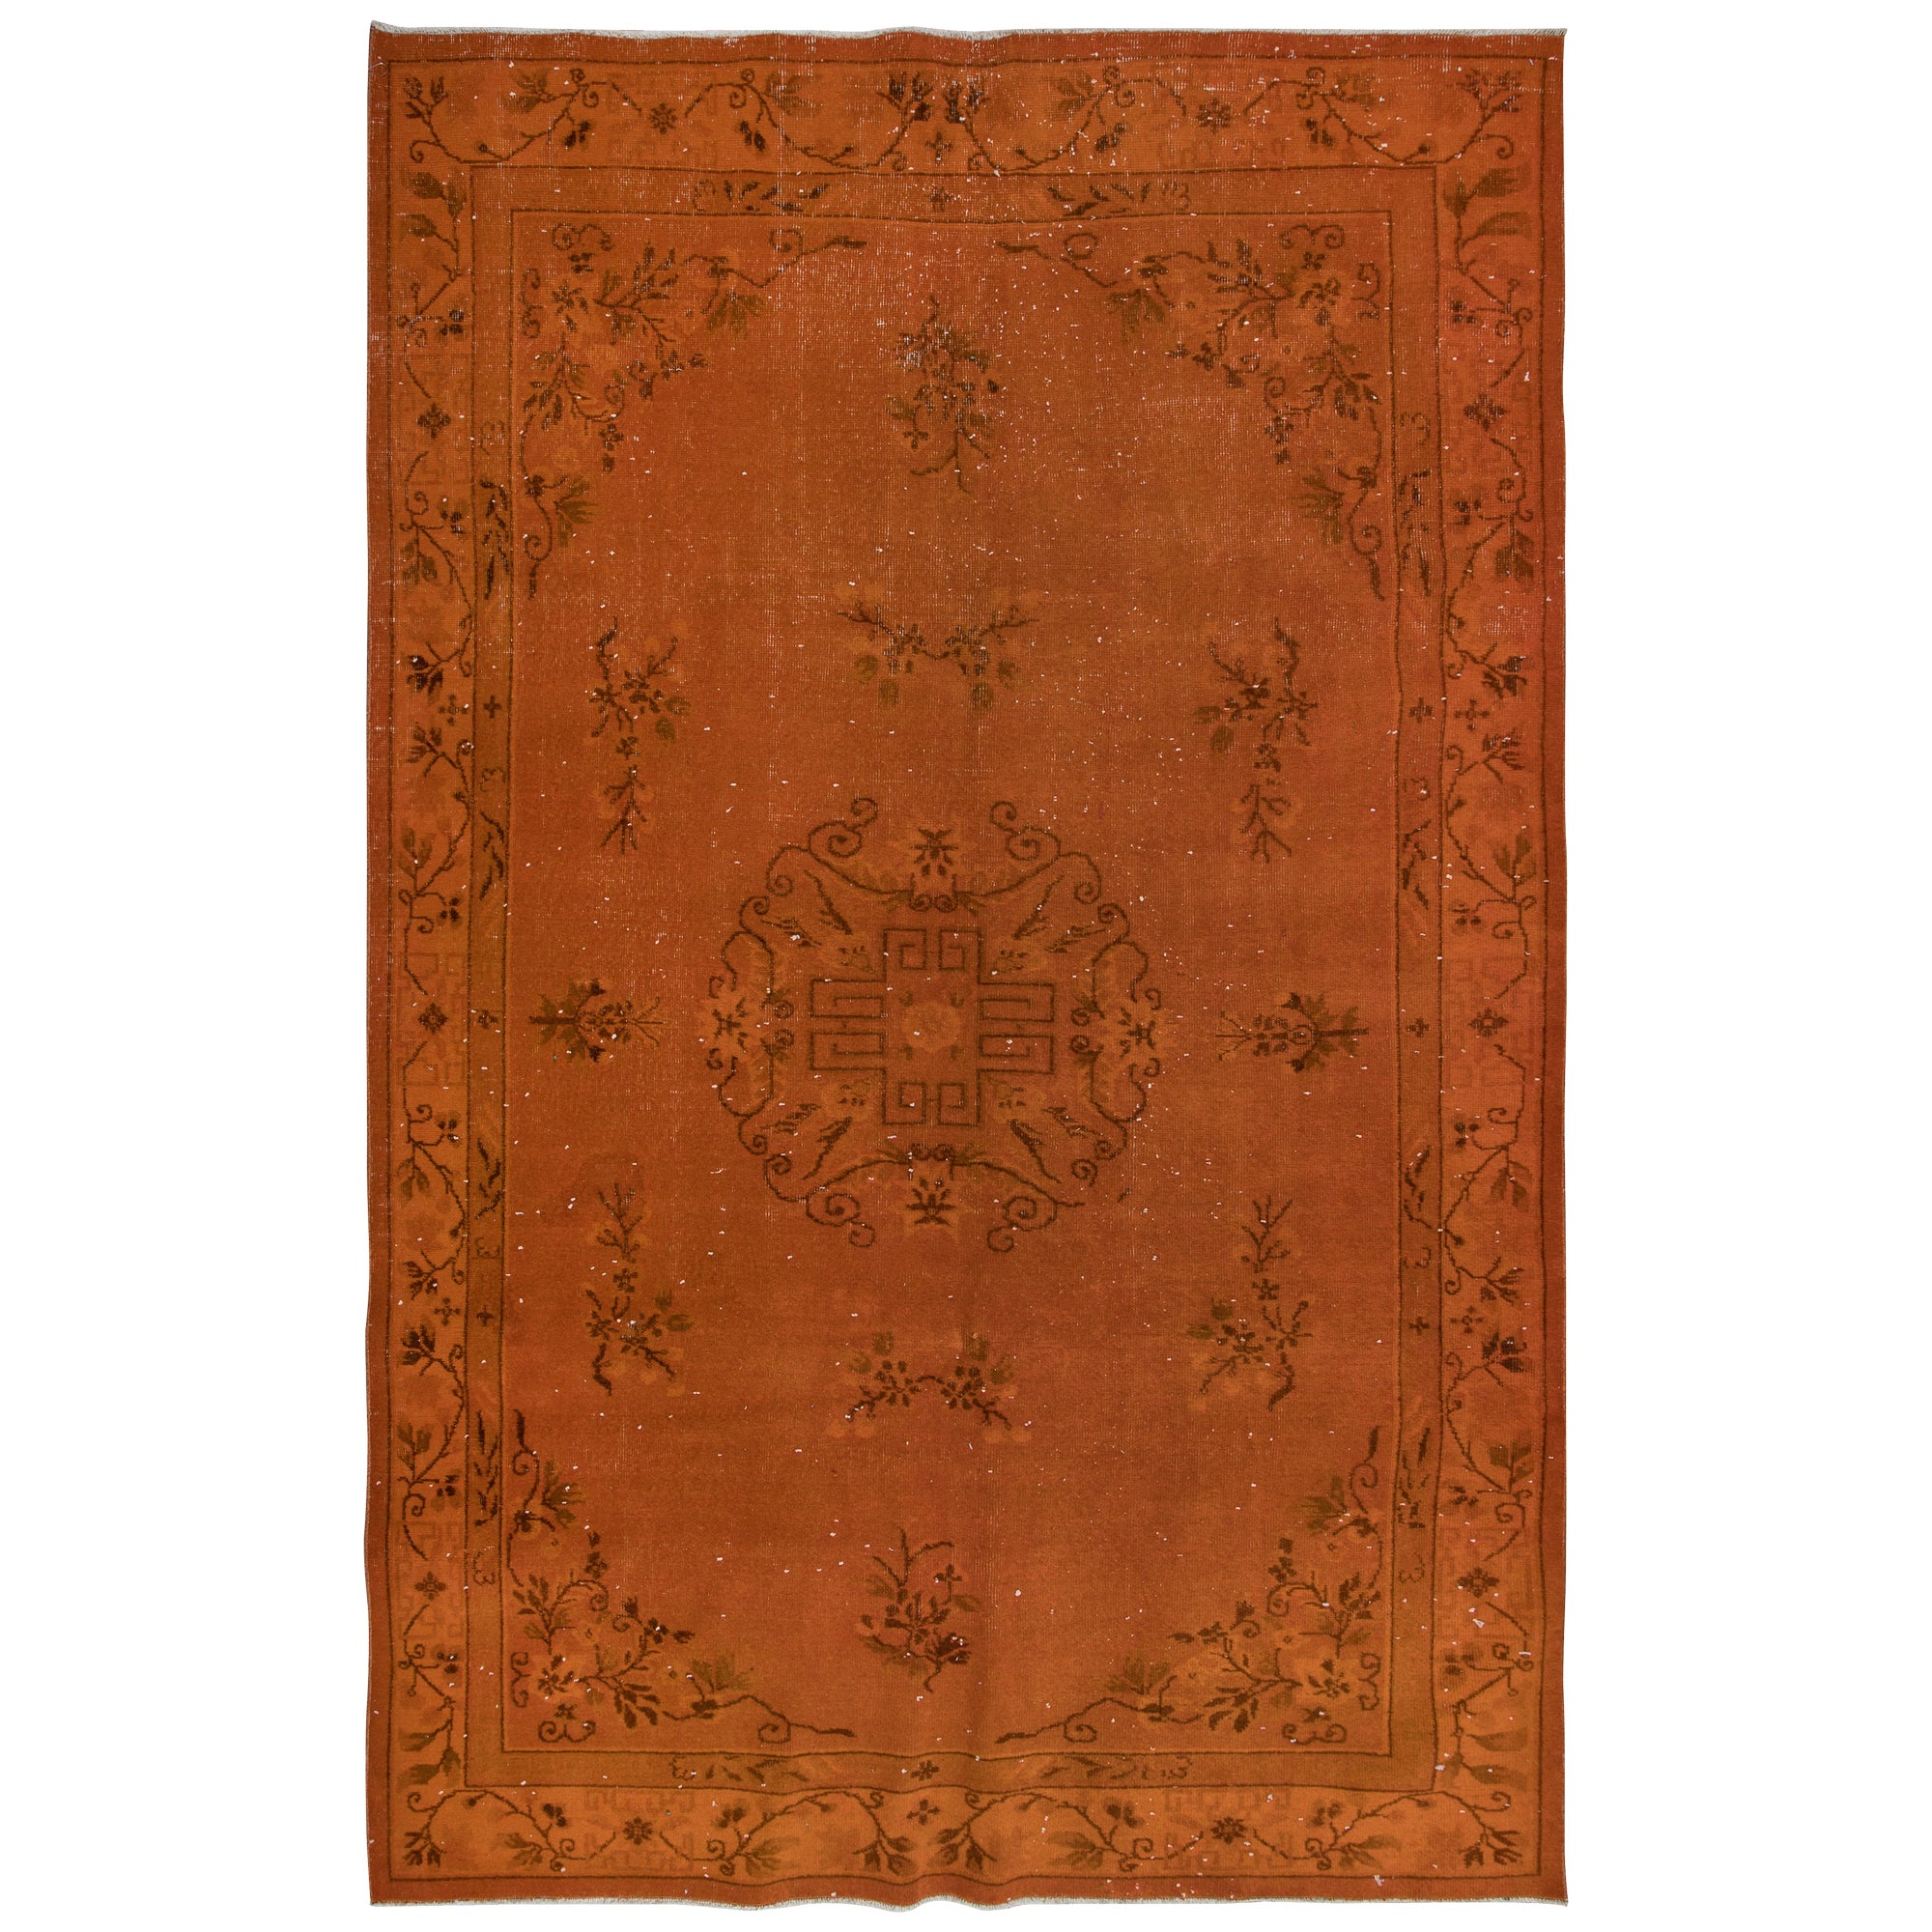 6.4x10 Ft Handmade Turkish Rug, Orange Art Deco Carpet for Modern Living Room For Sale